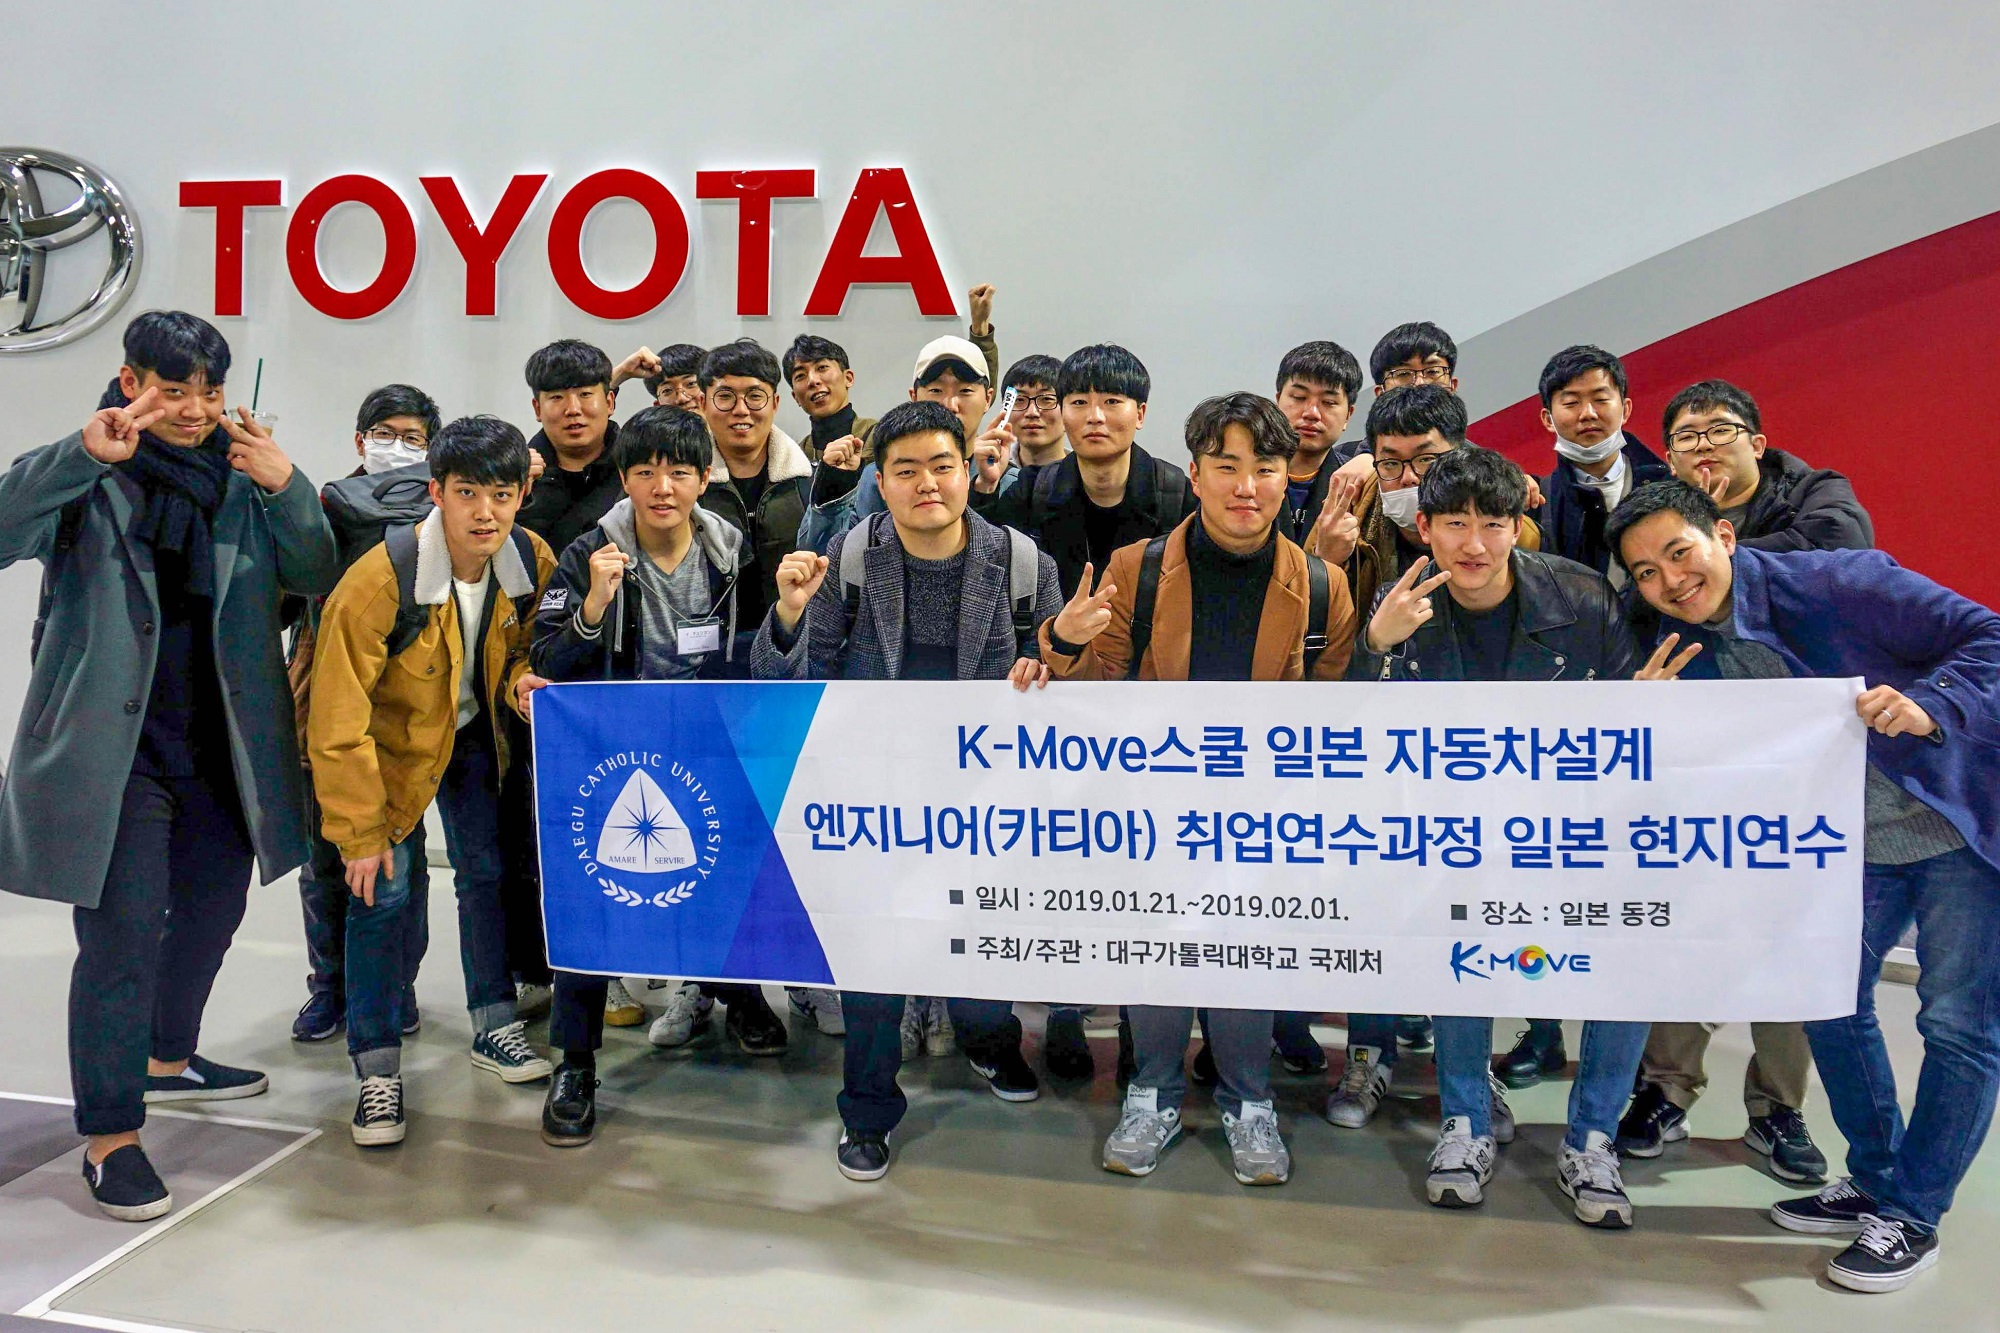 2019년에 시행된 K-MOVE스쿨 일본 자동차설계 엔지니어 취업연수과정에 참여한 
대구가톨릭대 학생들의 모습